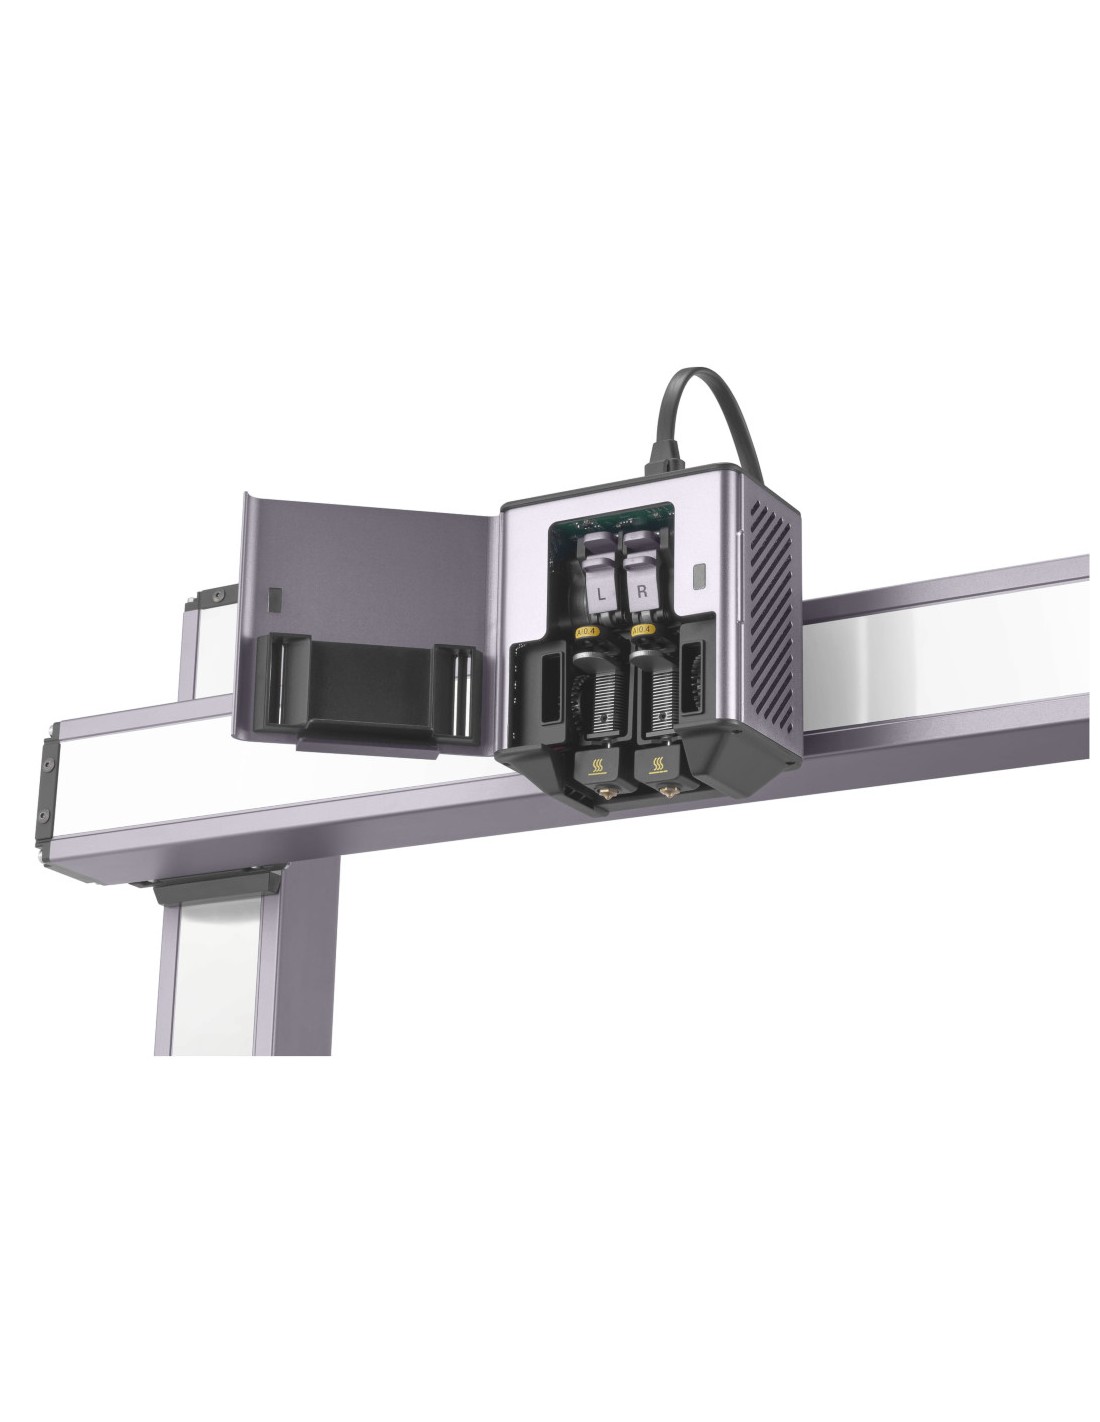 Snapmaker Artisan 3 em 1 - Impressora 3D, router CNC, máquina de gravação e corte a laser 40W